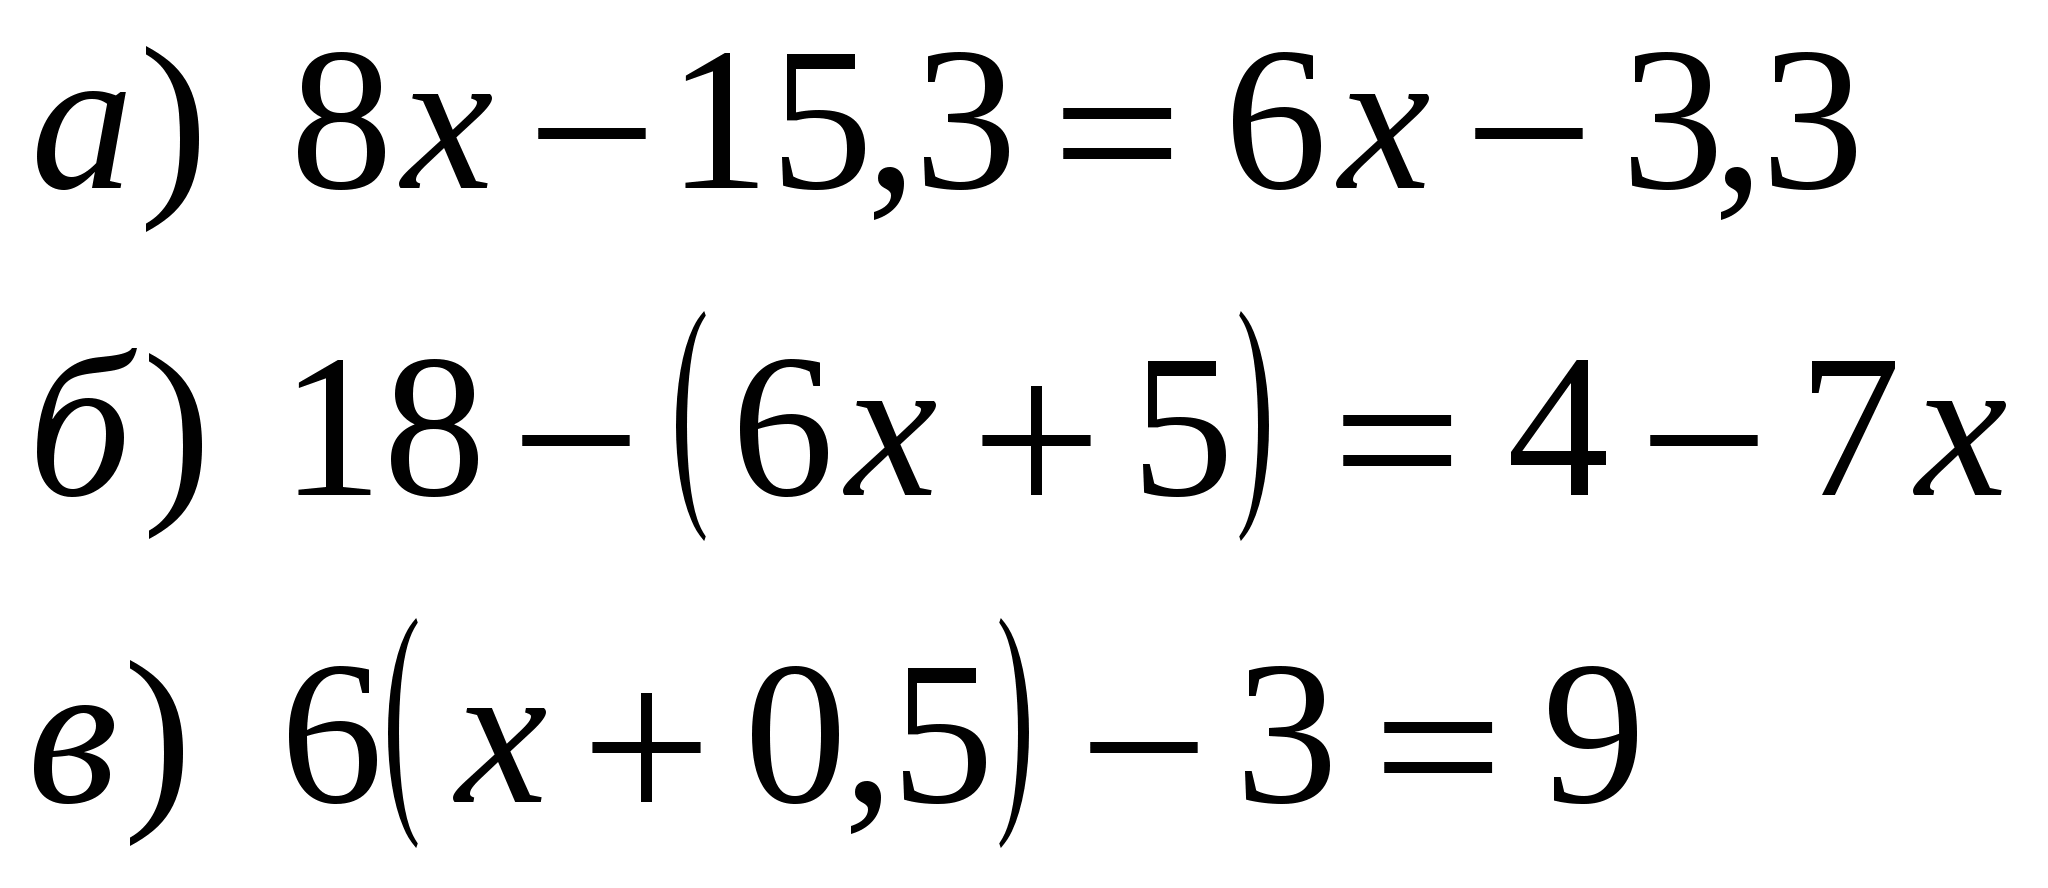 Уравнения 7 класс с ответами и решением. Линейные уравнения 7 класс Алгебра. Уравнения 7 класс по алгебре. Решить уравнение 7 класс Алгебра. Уравнения 7 класс по алгебре задания.